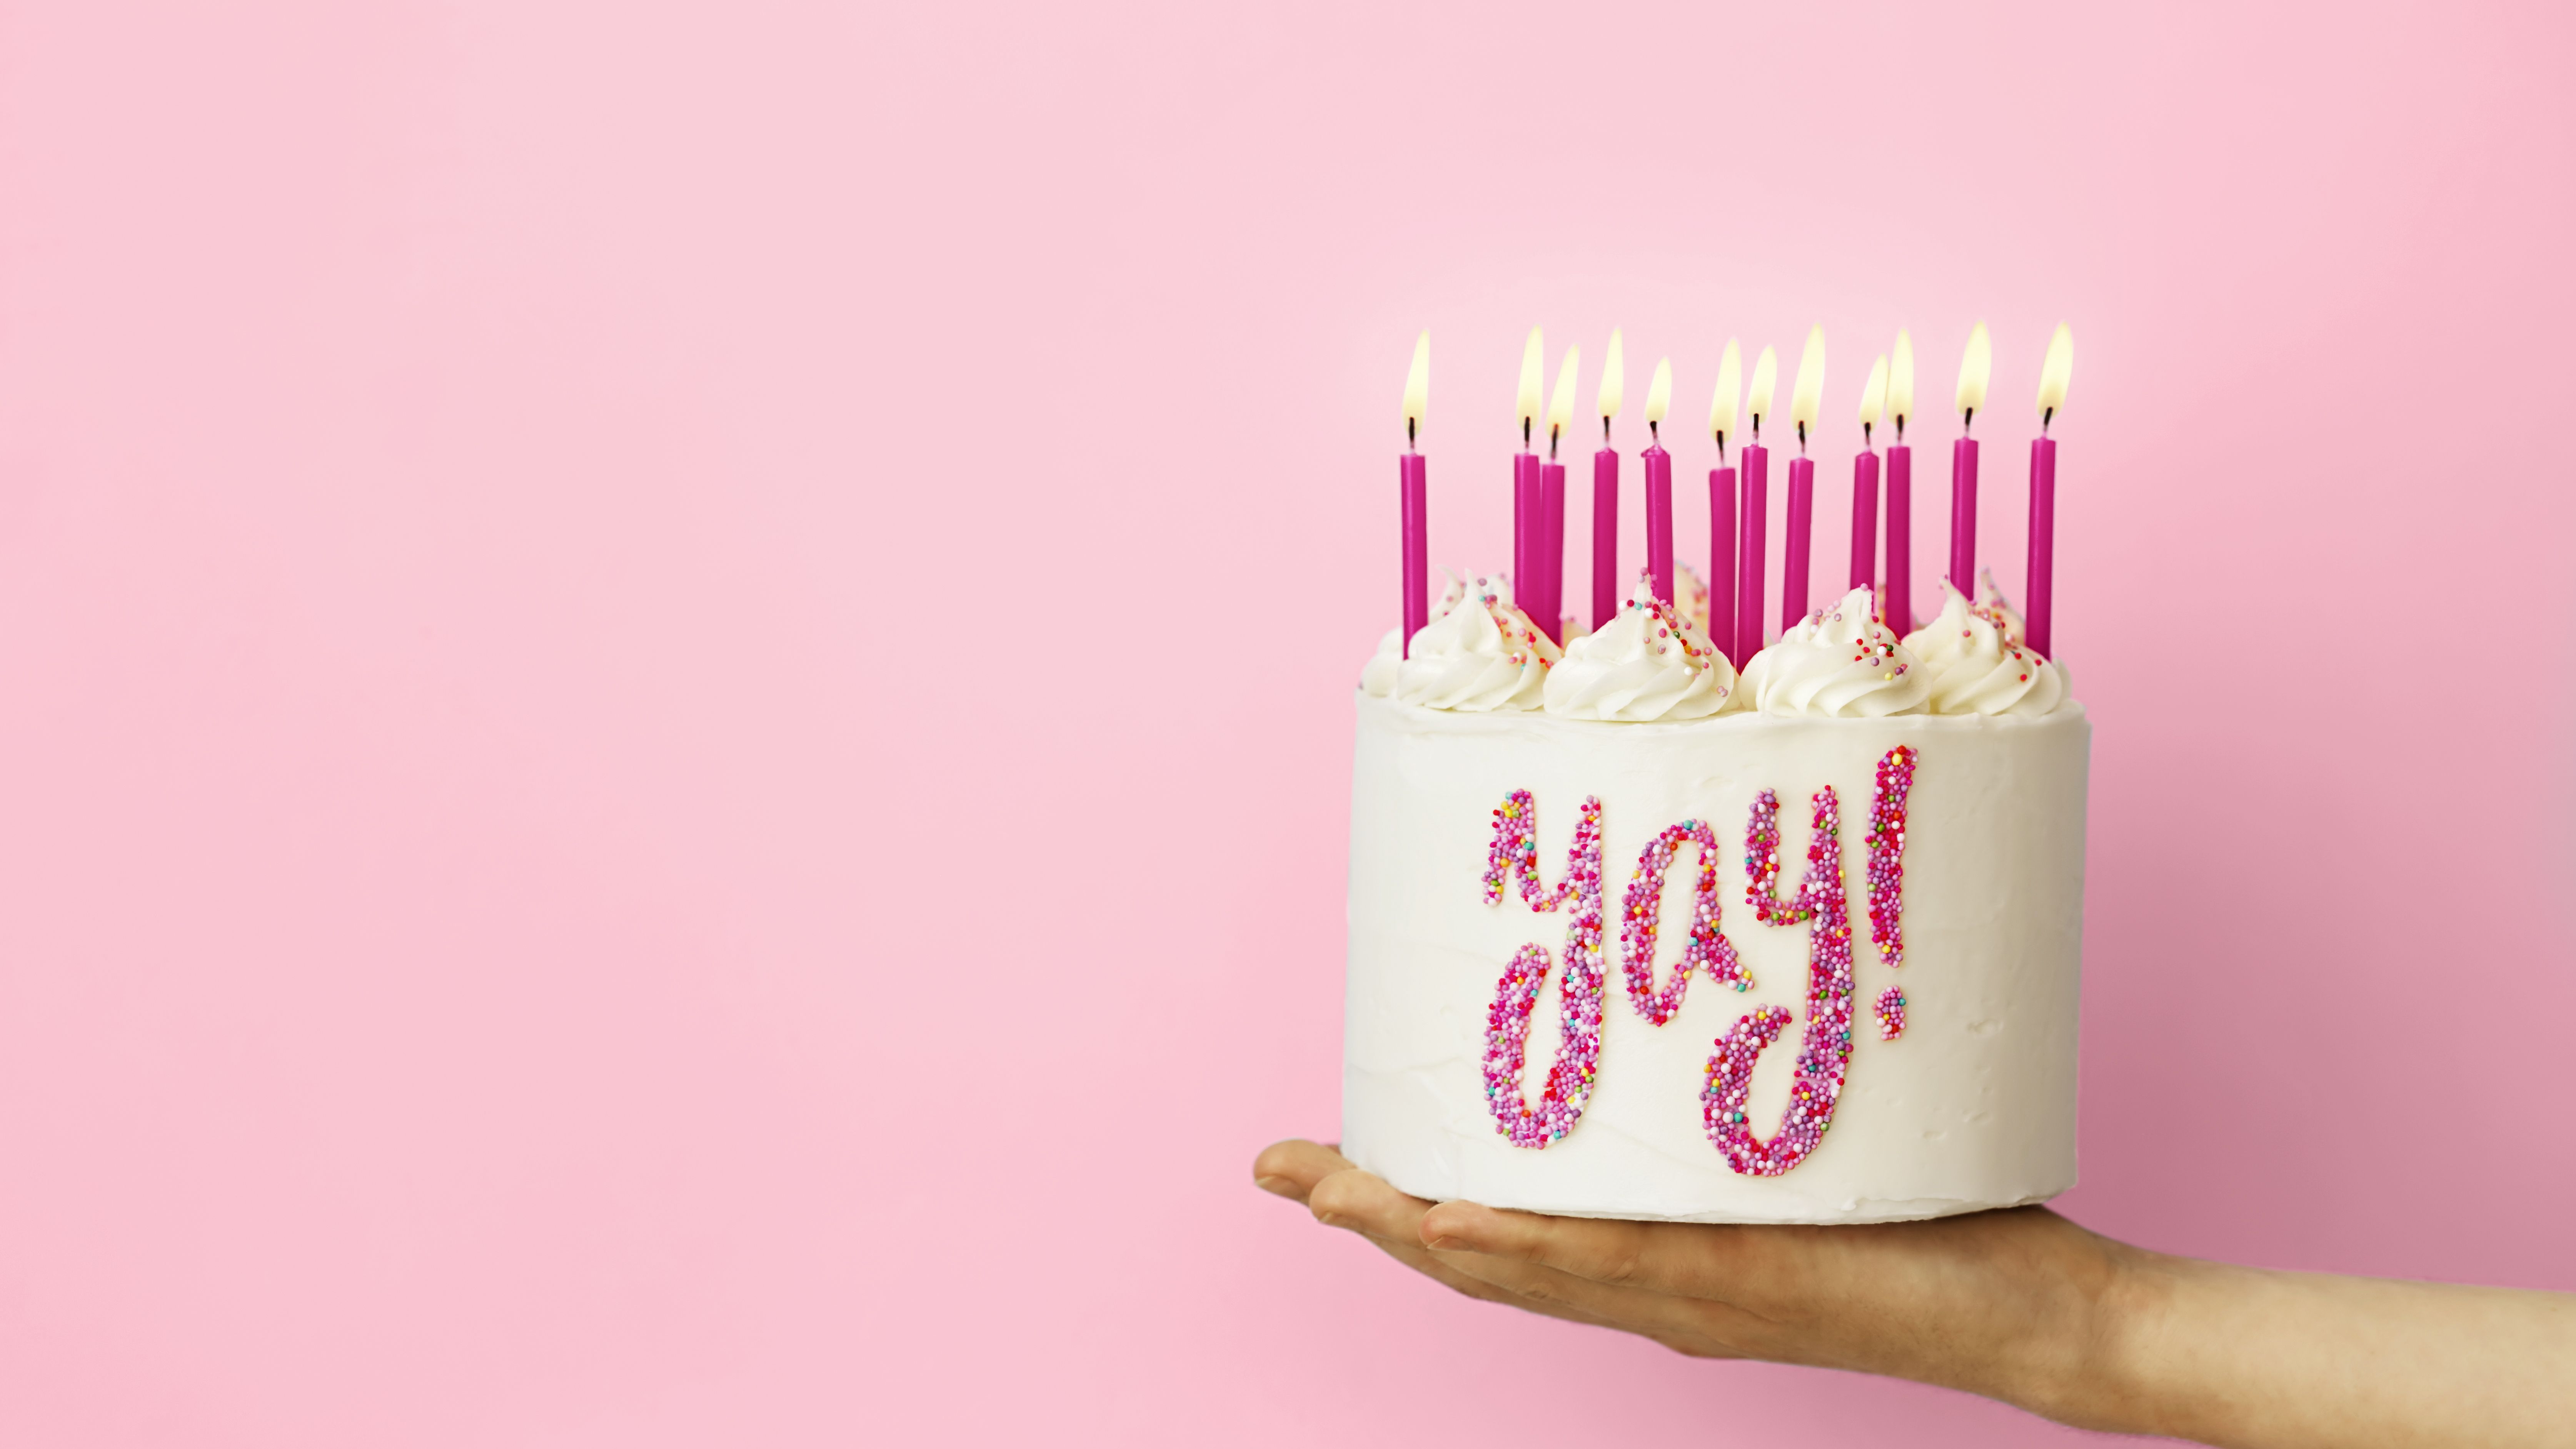 Đã đến lúc tìm kiếm tiêu đề Instagram sinh nhật đáng yêu nhất để làm cho ngày sinh nhật của bạn thêm ý nghĩa!